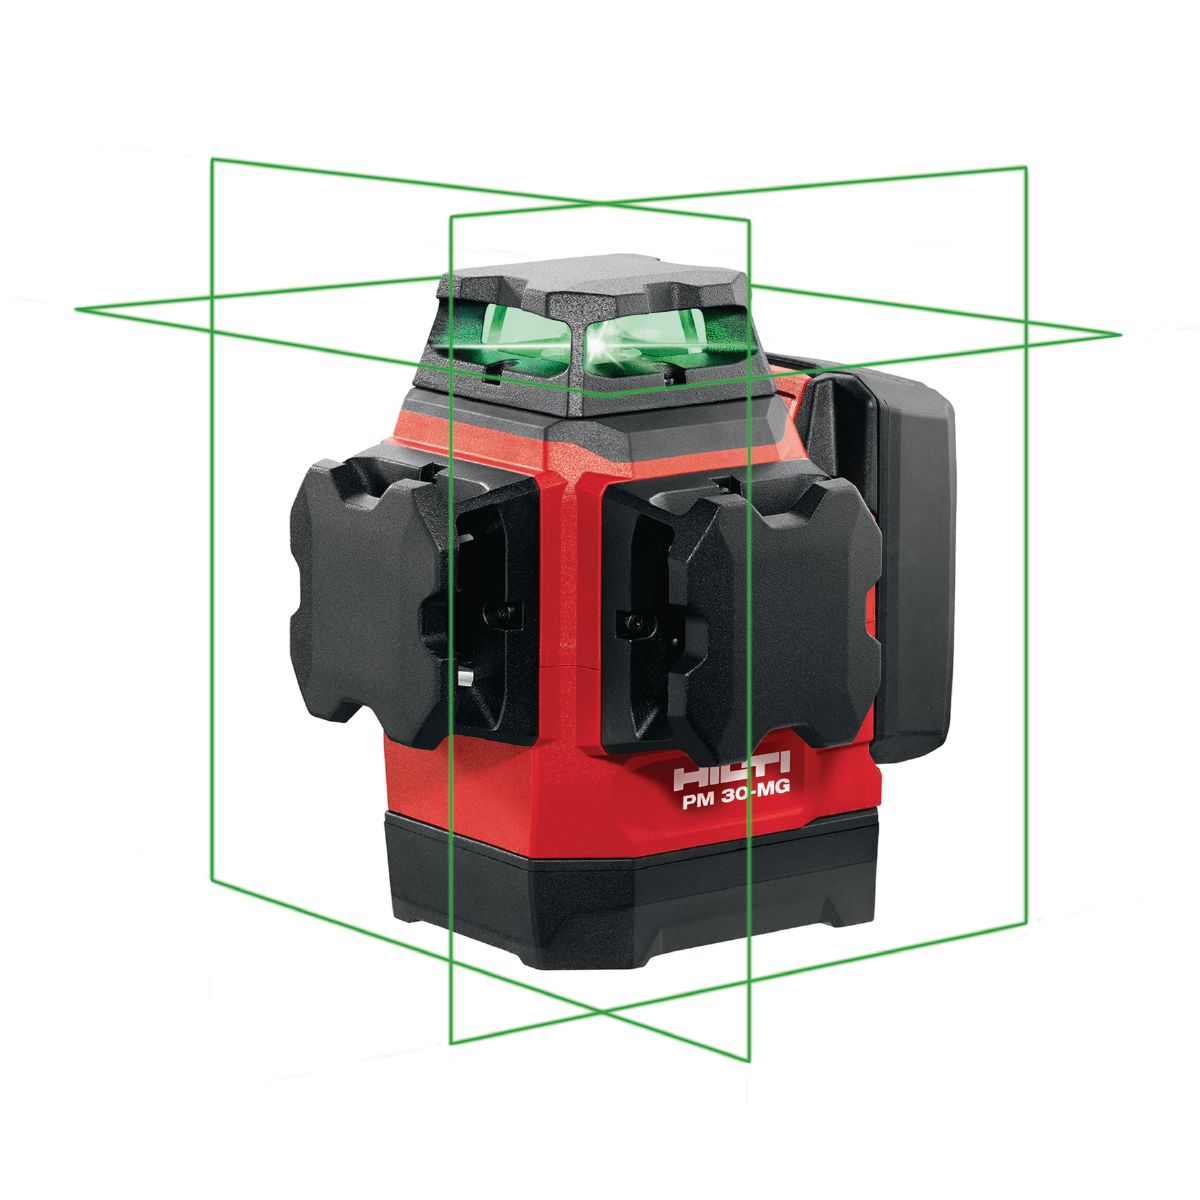 Фото Лазерный уровень Хилти (Hilti) PM 30-MG комплект с ловушкой и штативом Аккумуляторные измерительные инструменты 